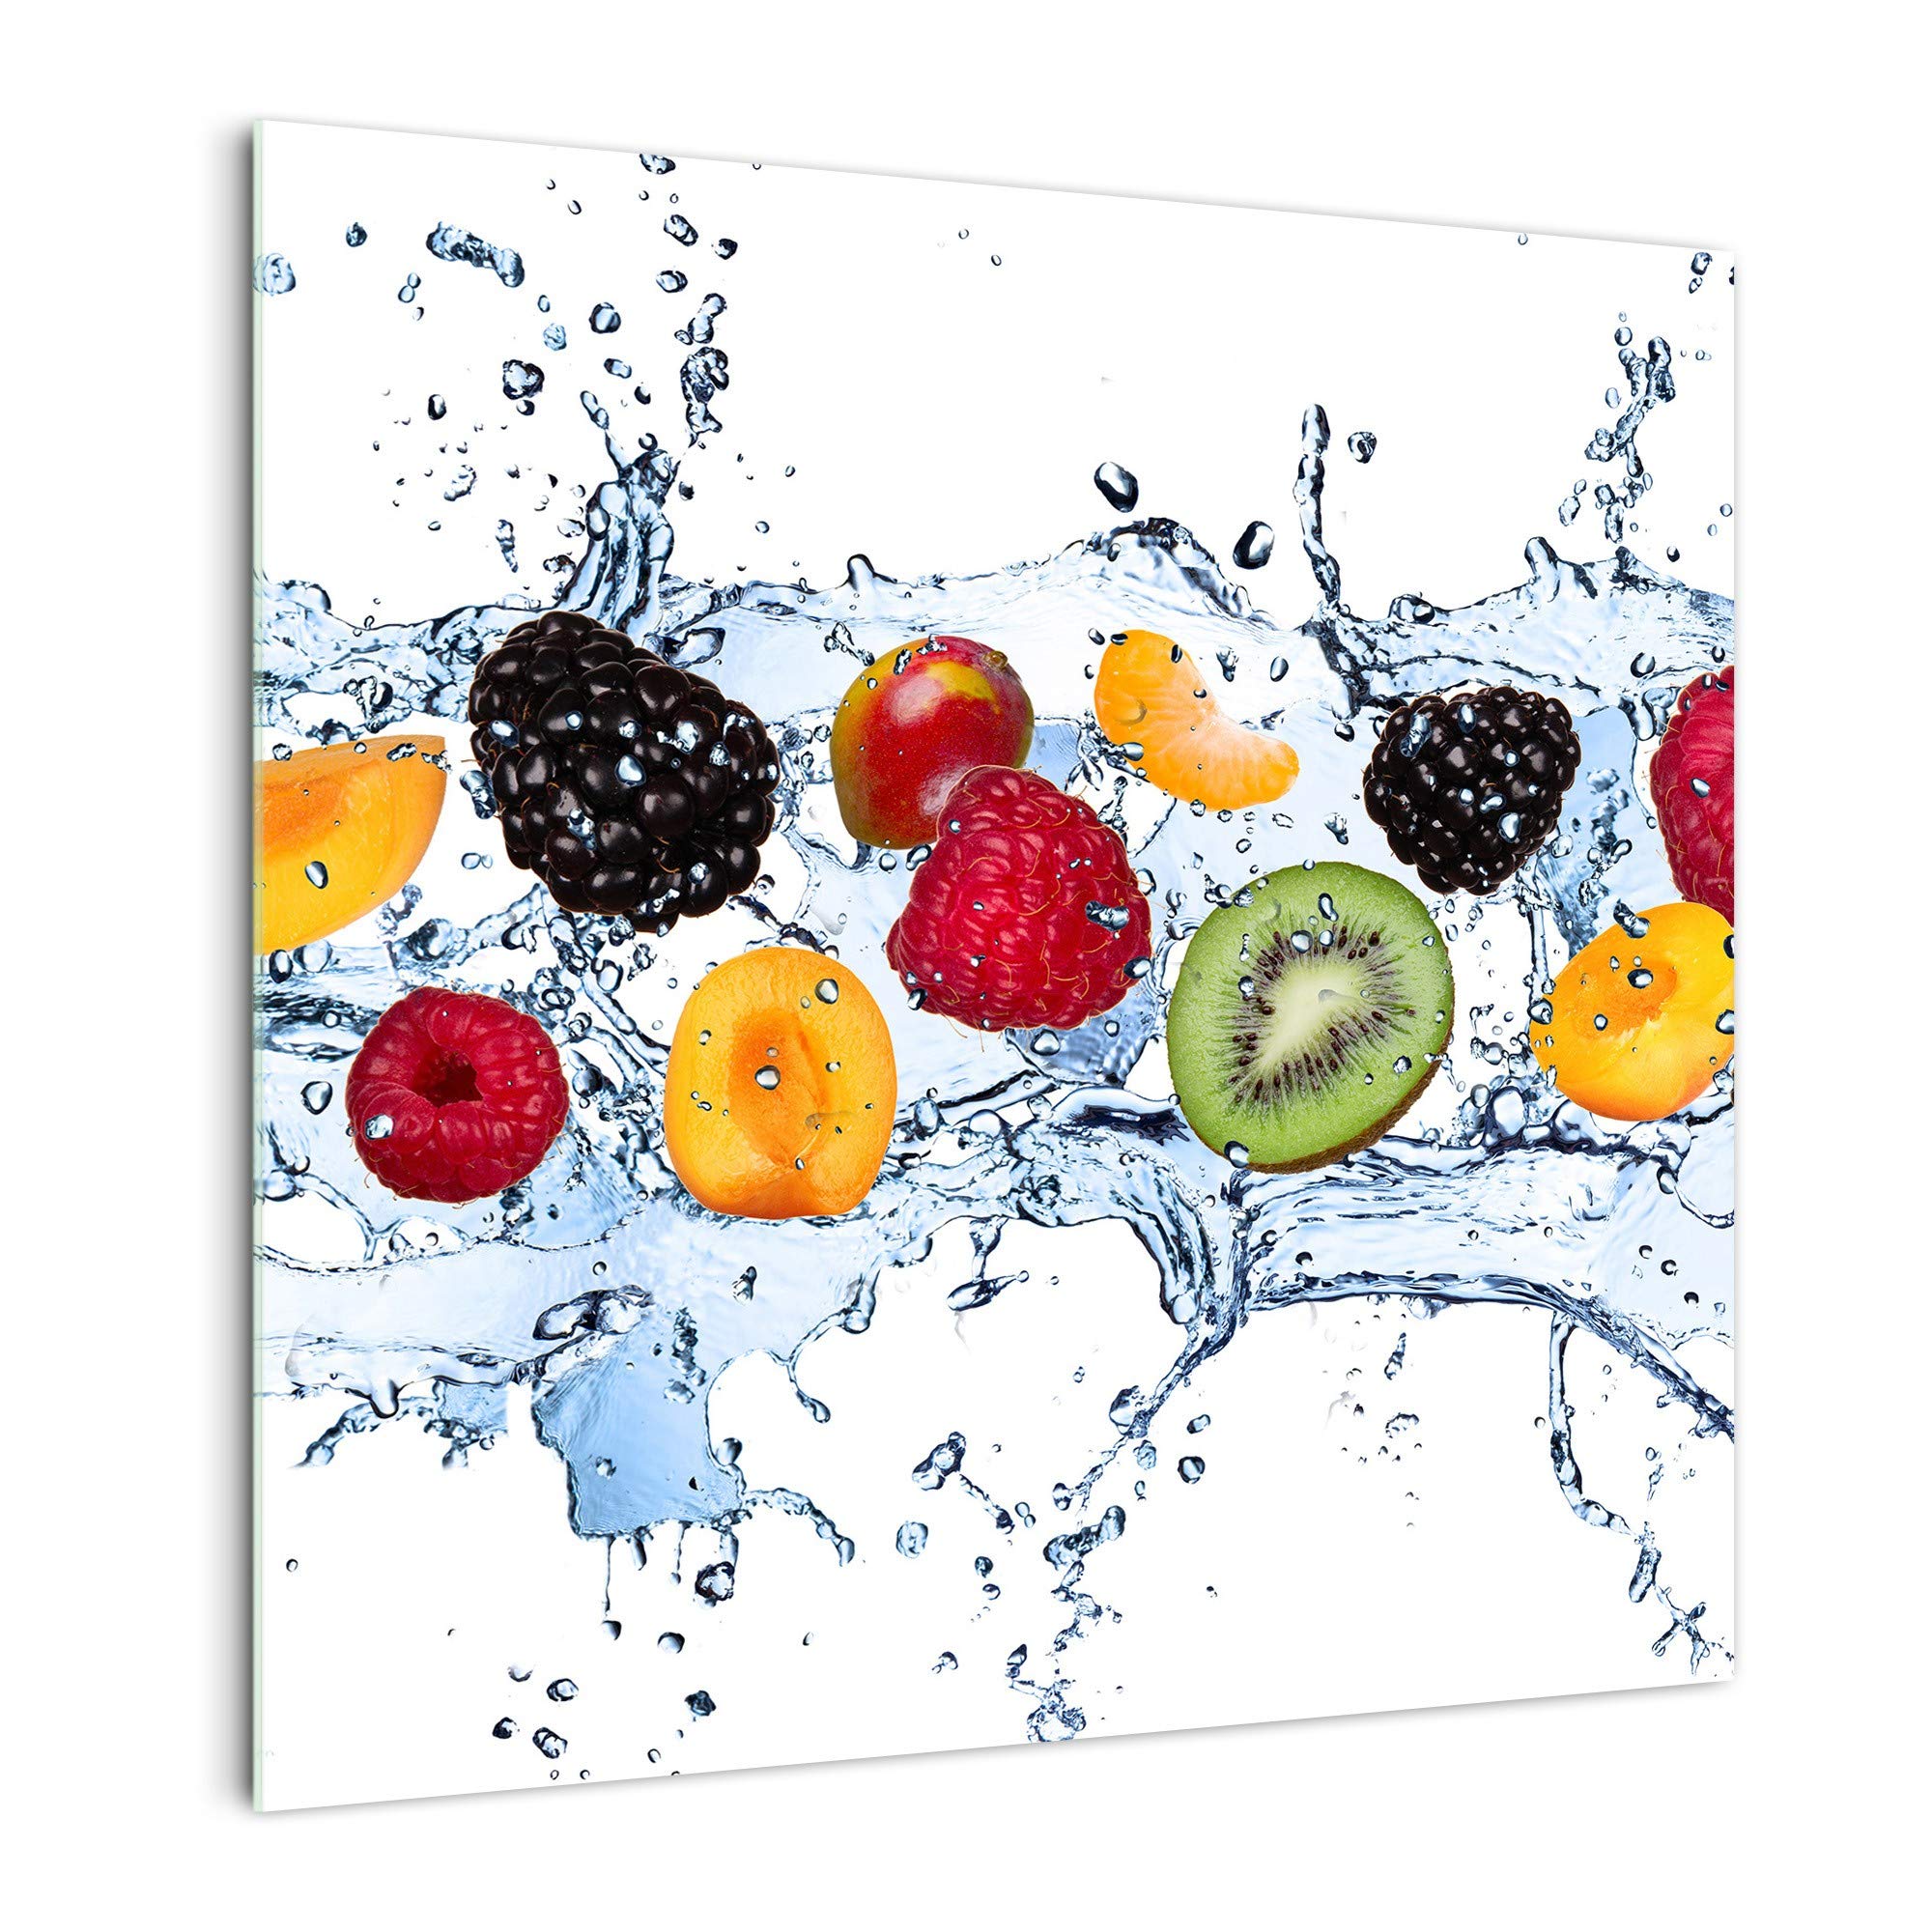 DekoGlas Küchenrückwand 'Früchtemix on Ice' in div. Größen, Glas-Rückwand, Wandpaneele, Spritzschutz & Fliesenspiegel